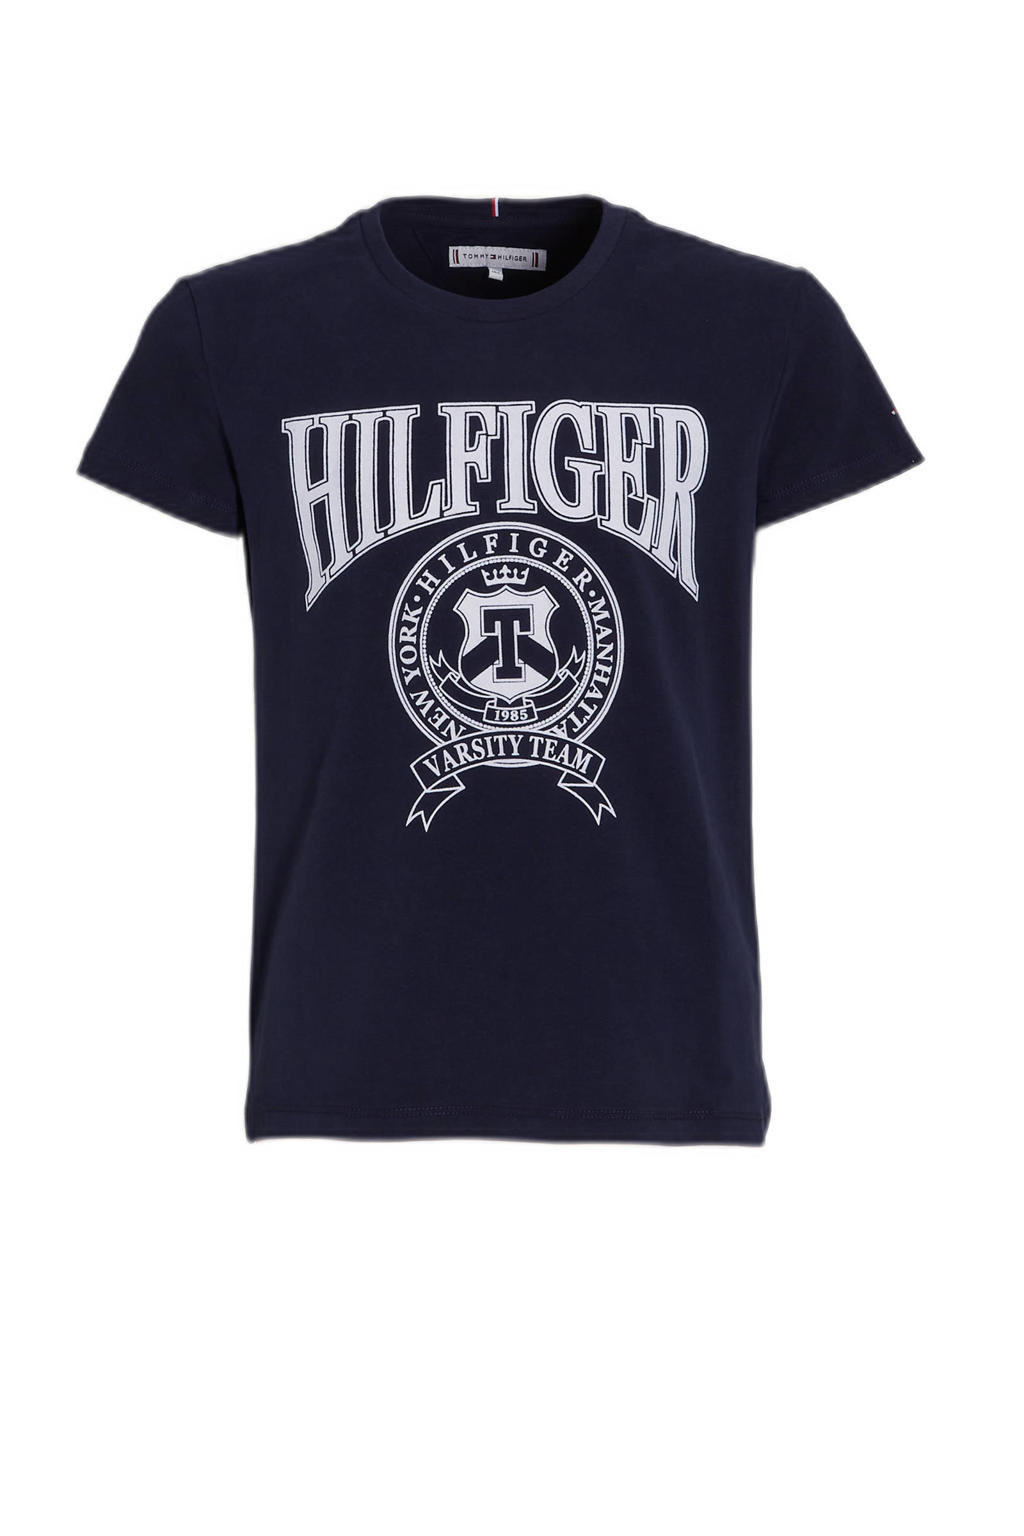 Donkerblauwe meisjes Tommy Hilfiger T-shirt van duurzaam stretchkatoen met logo dessin, korte mouwen en ronde hals